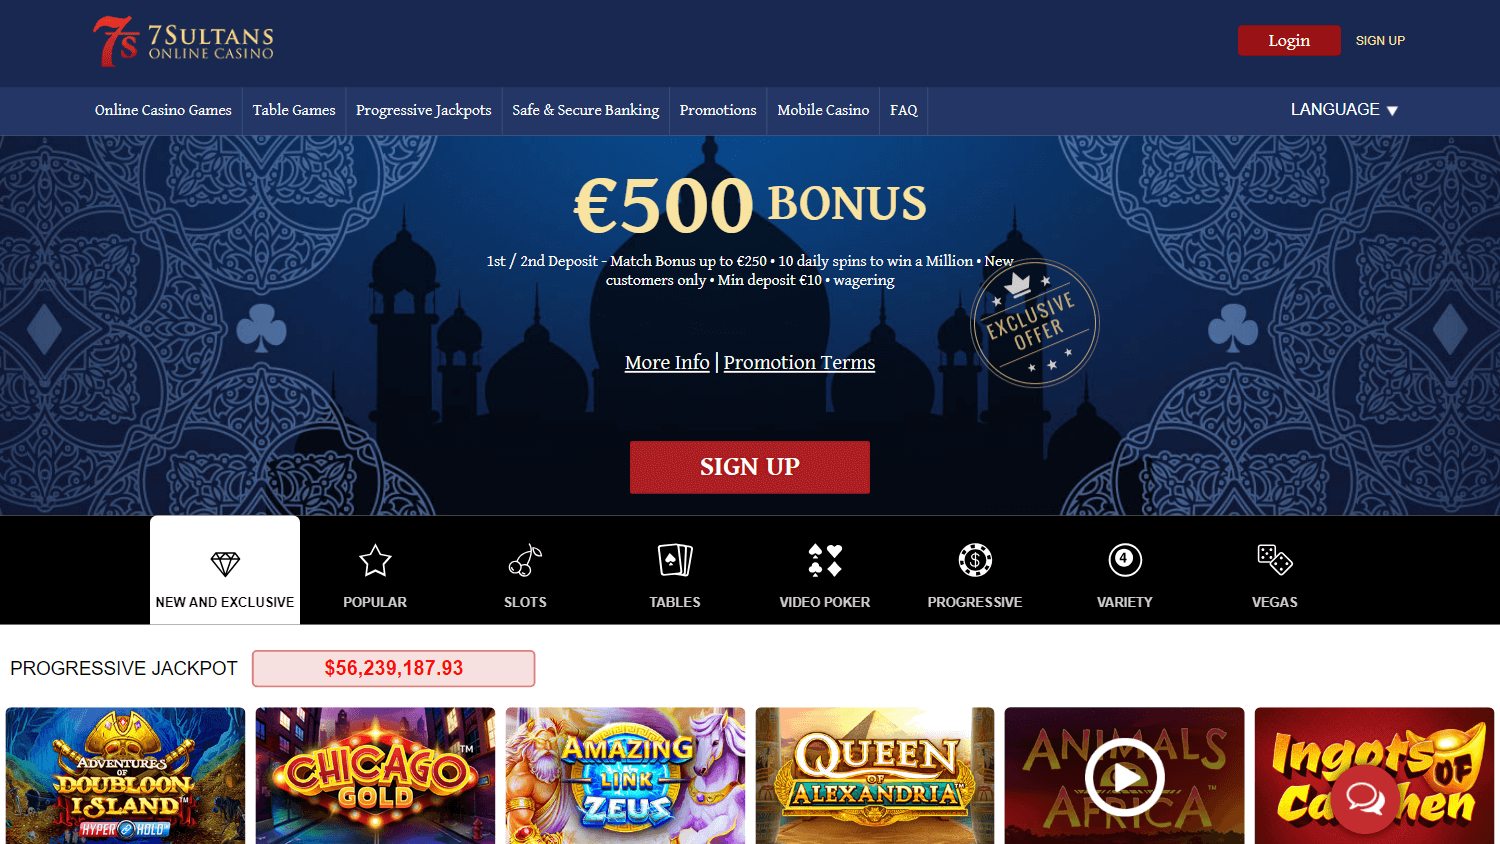 7_sultans_casino_homepage_desktop